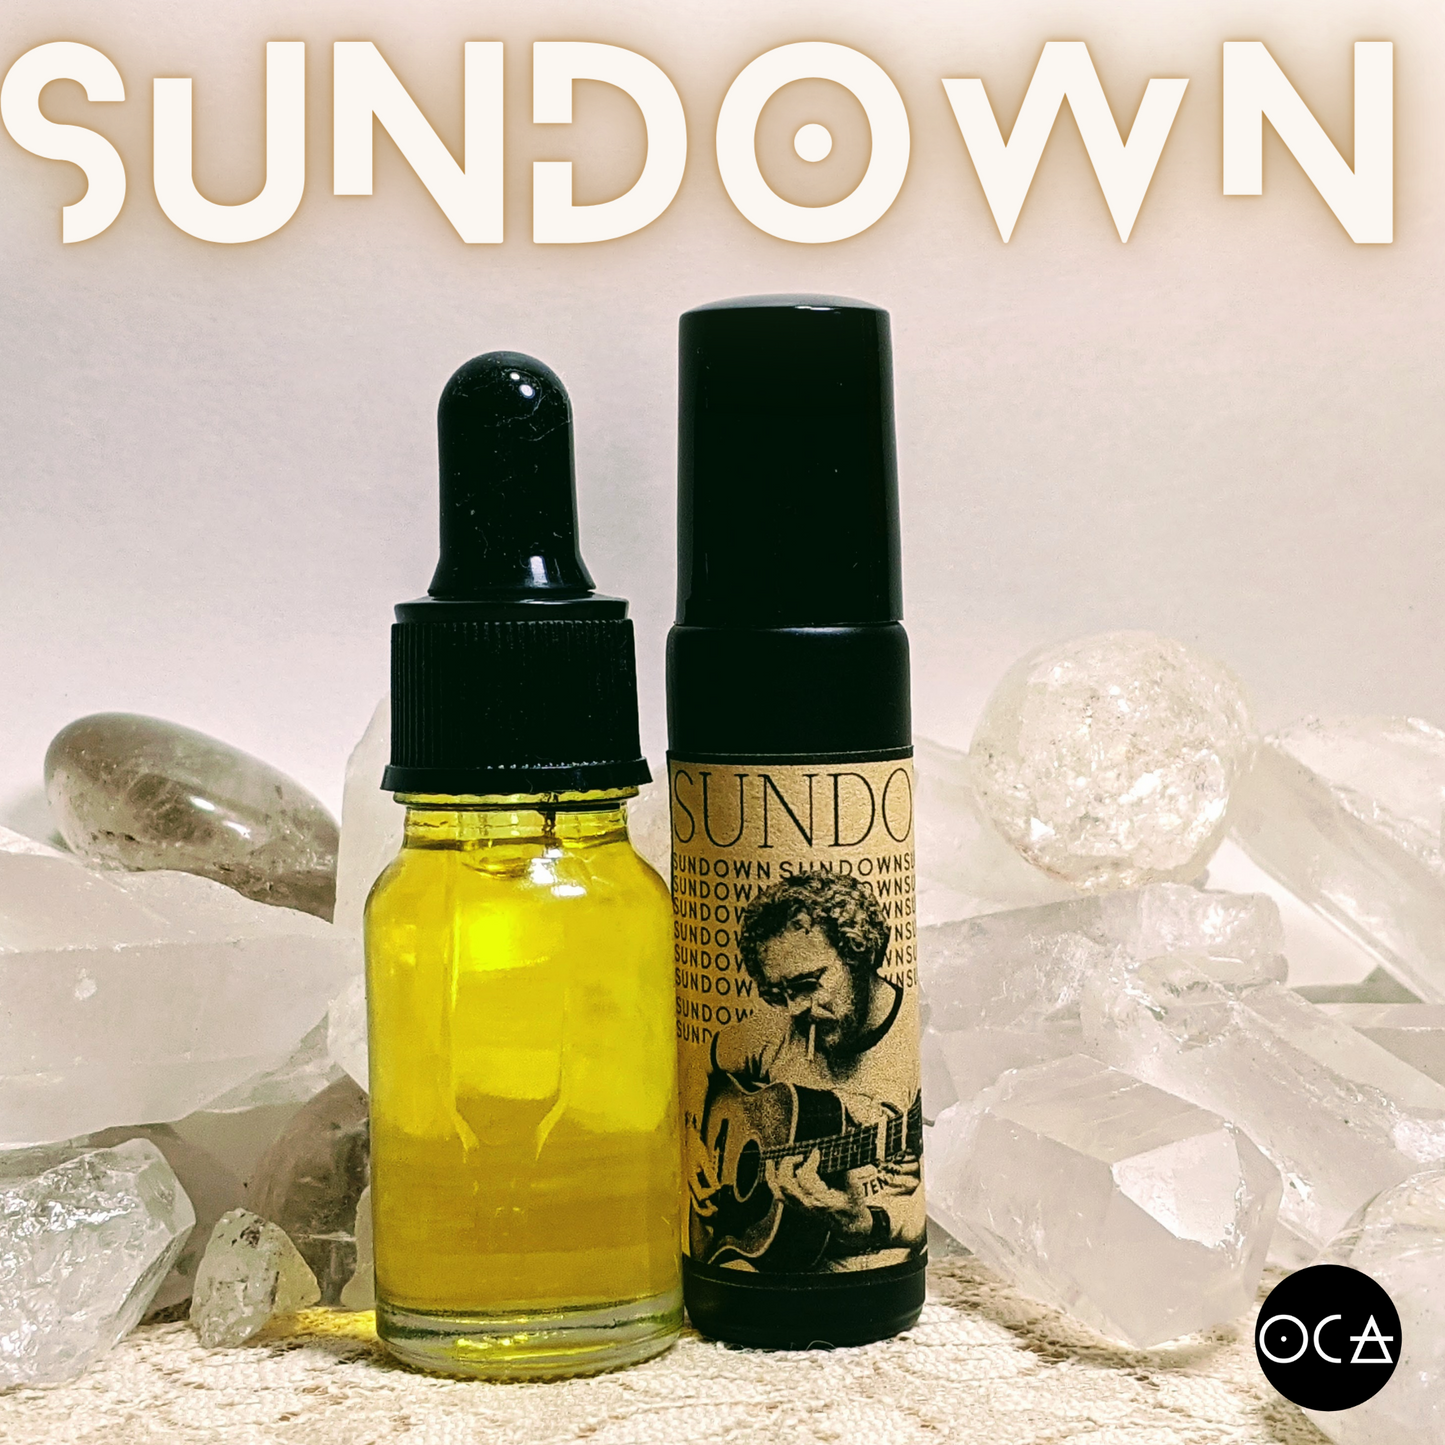 Sundown Herbfume (Oil/Unisex Perfume/Cologne) A tribute to Gordon Lightfoot